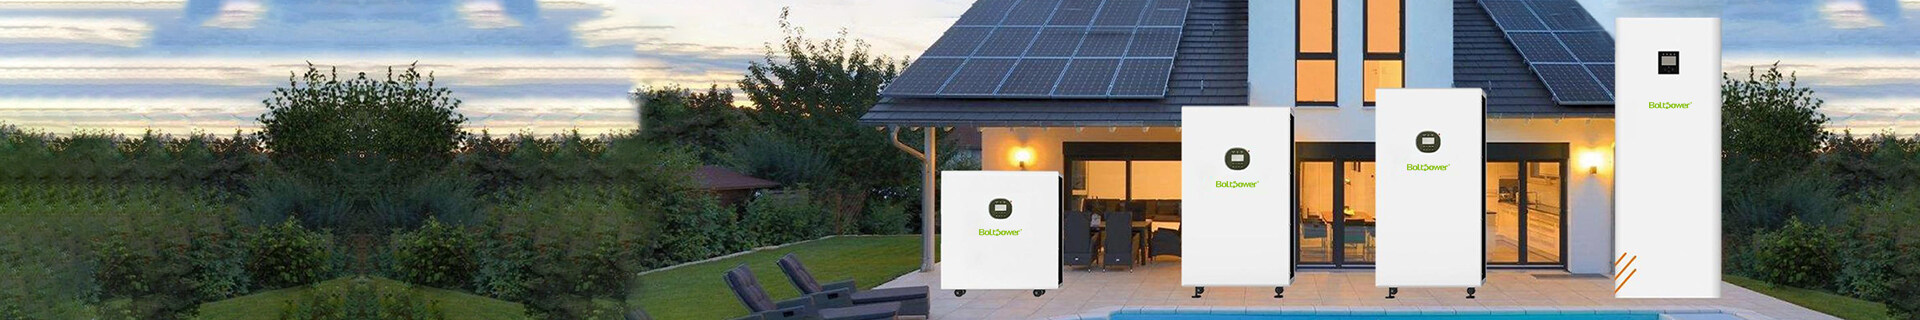 Хранение энергии домохозяйства, системы хранения энергии домохозяйства, батарея хранения энергии домохозяйства